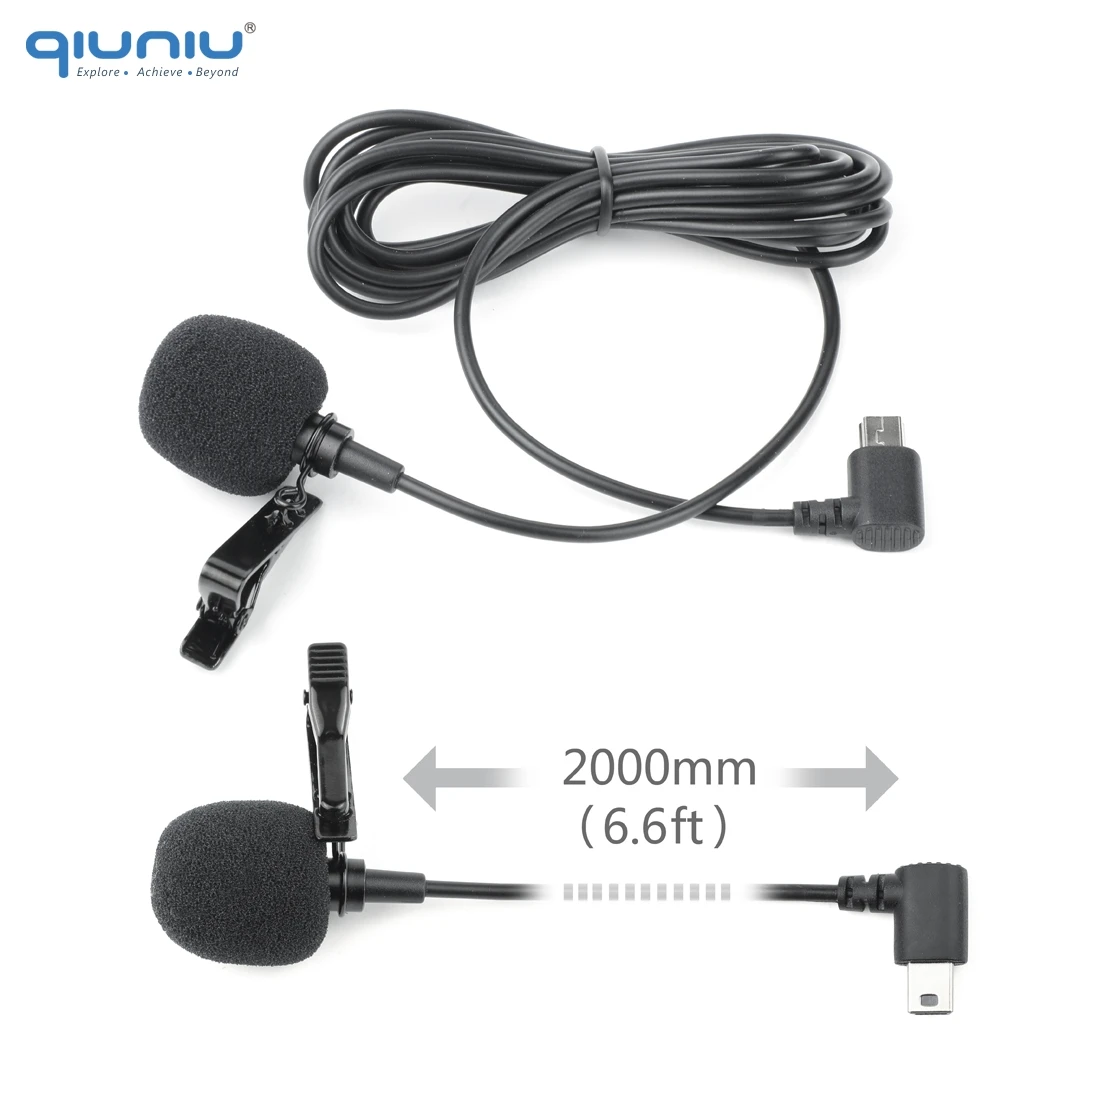 QIUNIU 2 м внешний микрофон со стандартной рамкой крепление защитный корпус чехол для GoPro Hero 3 3+ 4 Go Pro 4 аксессуары